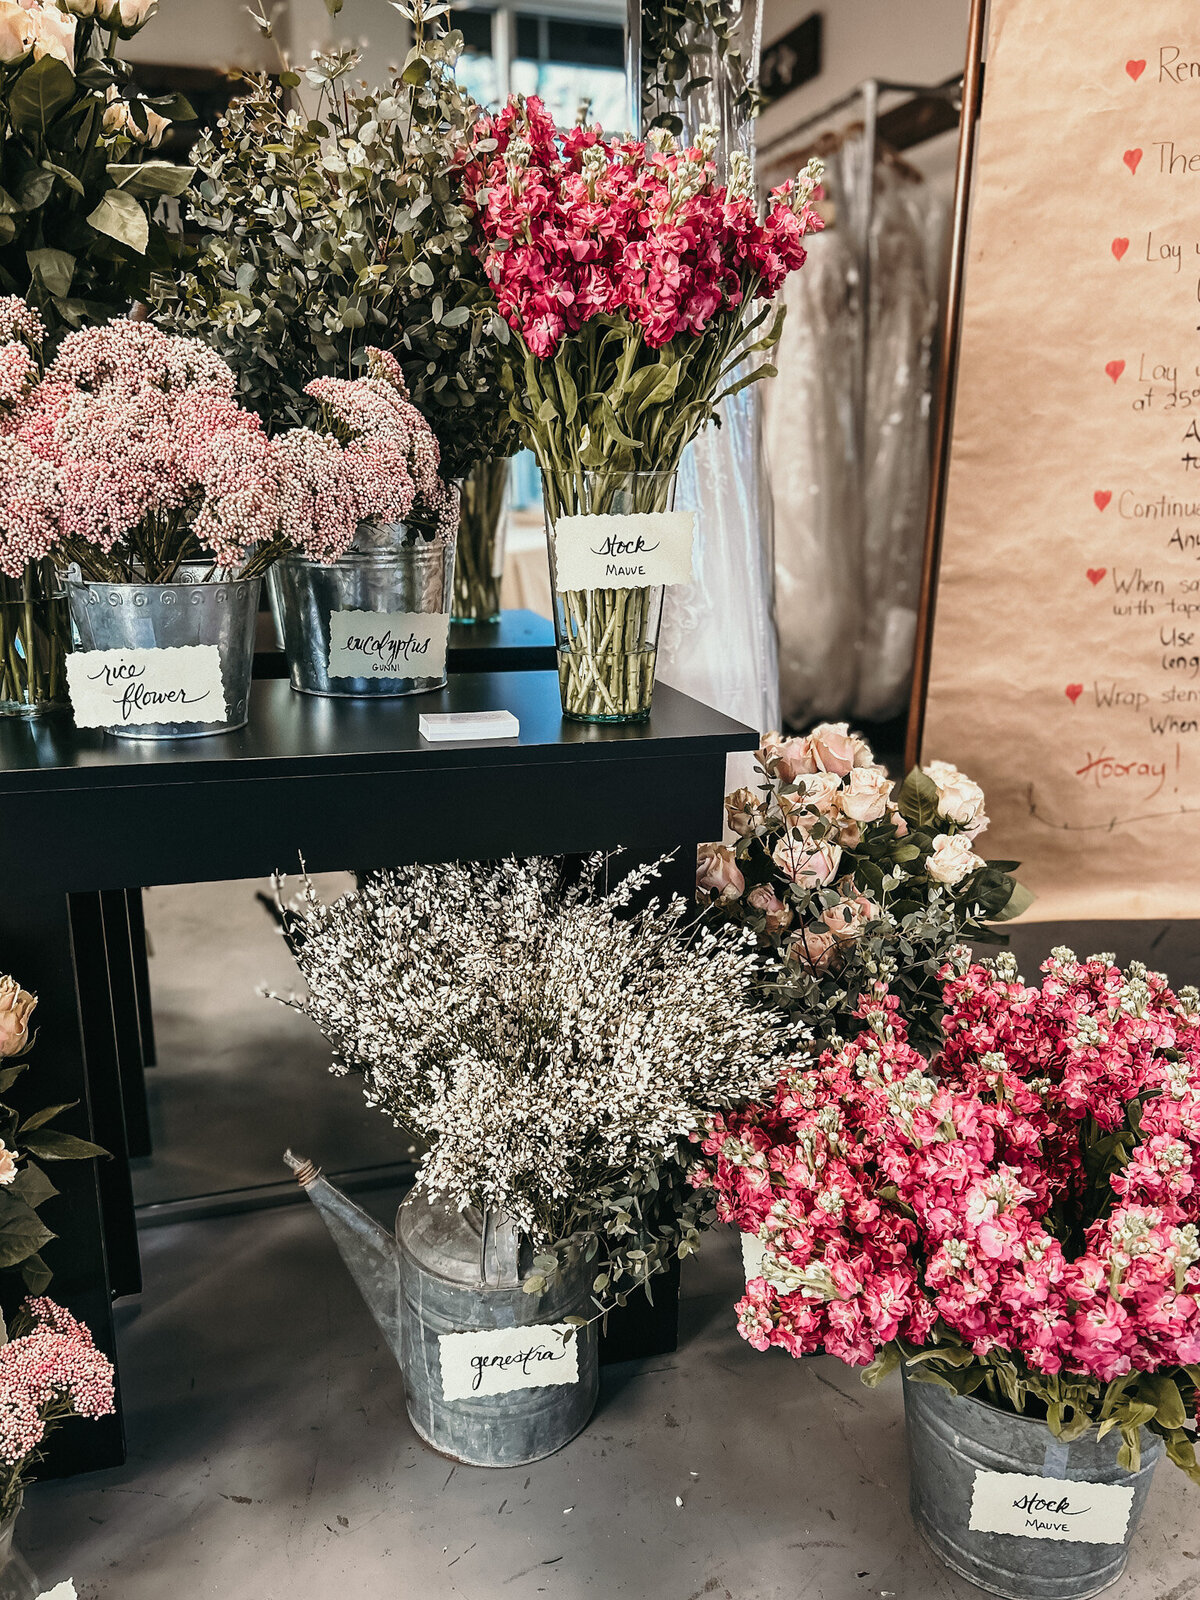 Flowers set up like a market